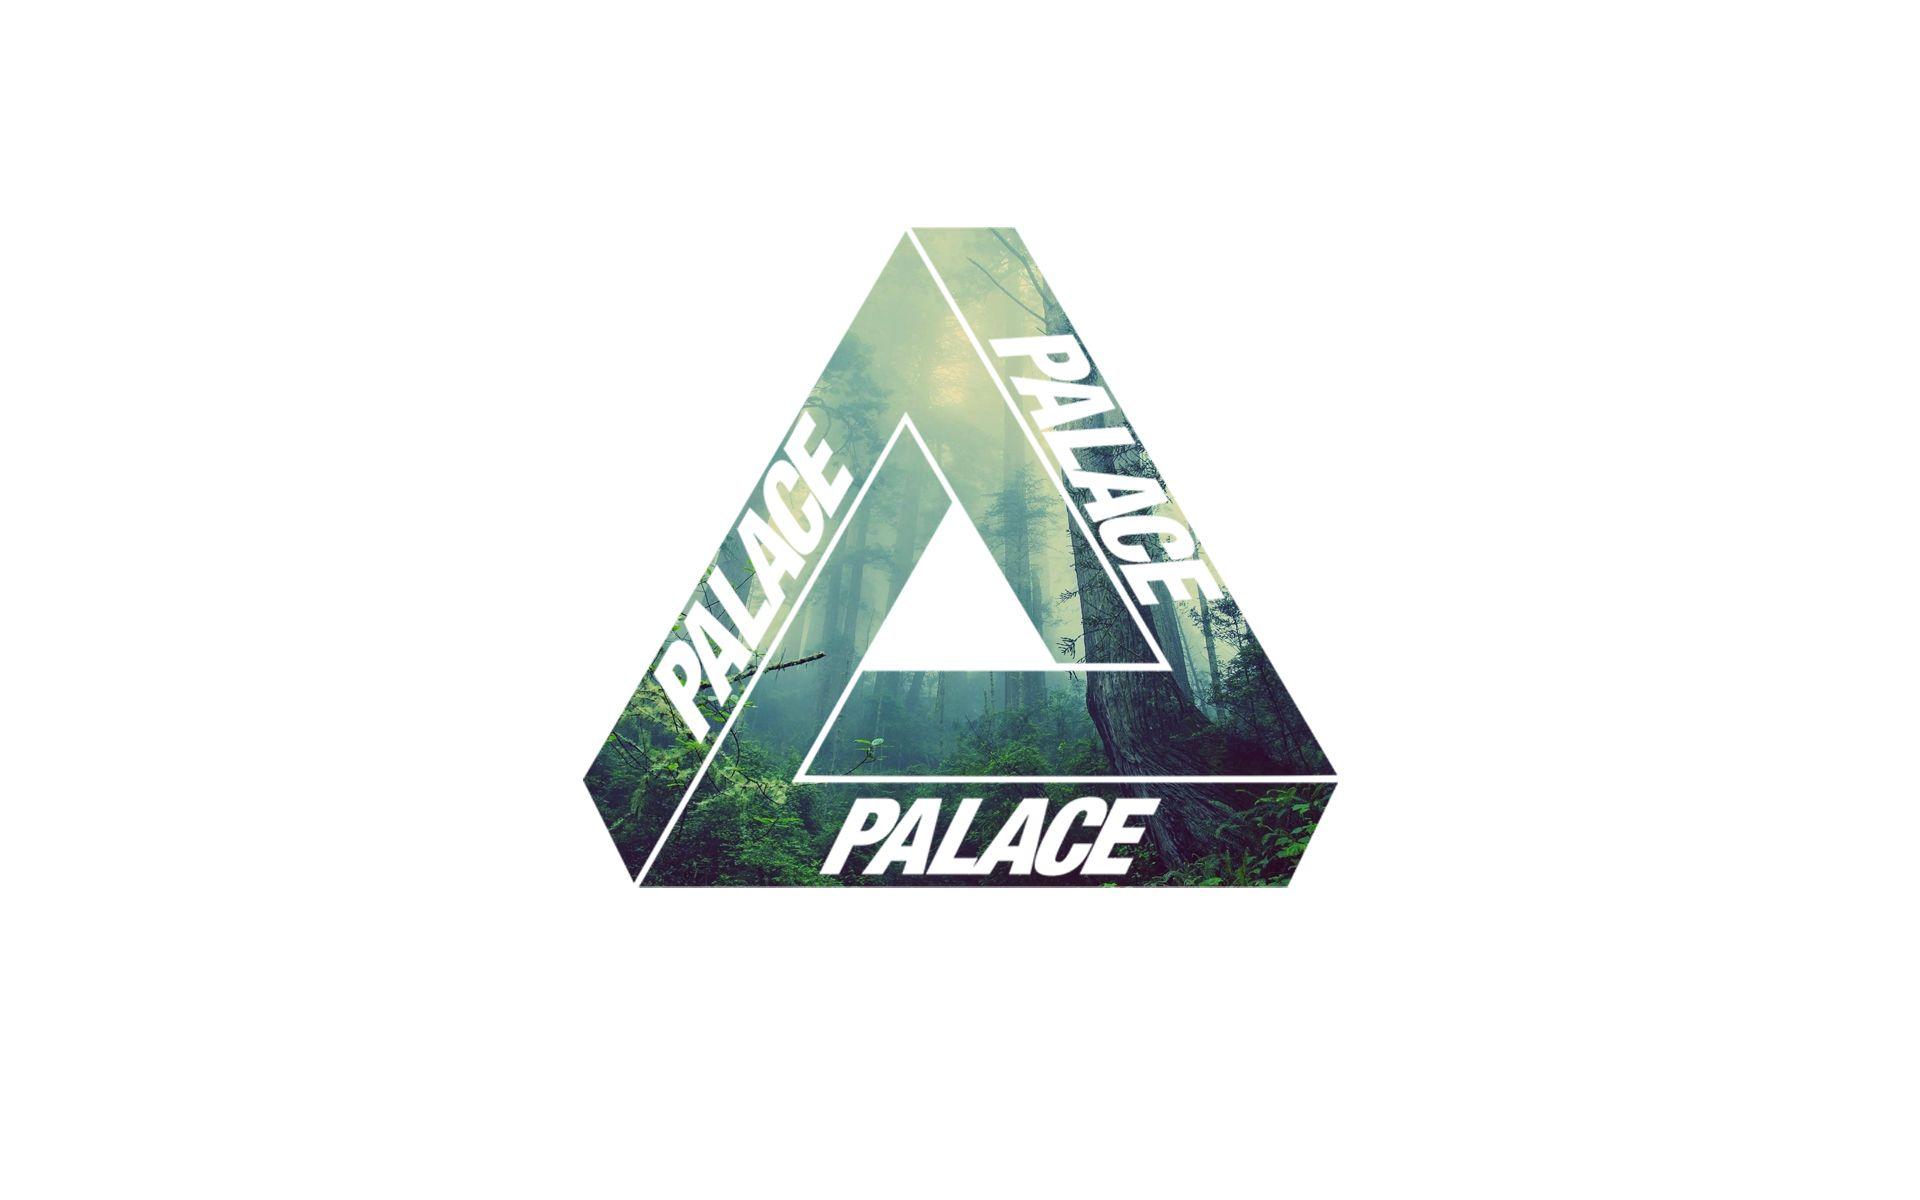 Palace Triangle Brand Logo - Palace Wallpaper